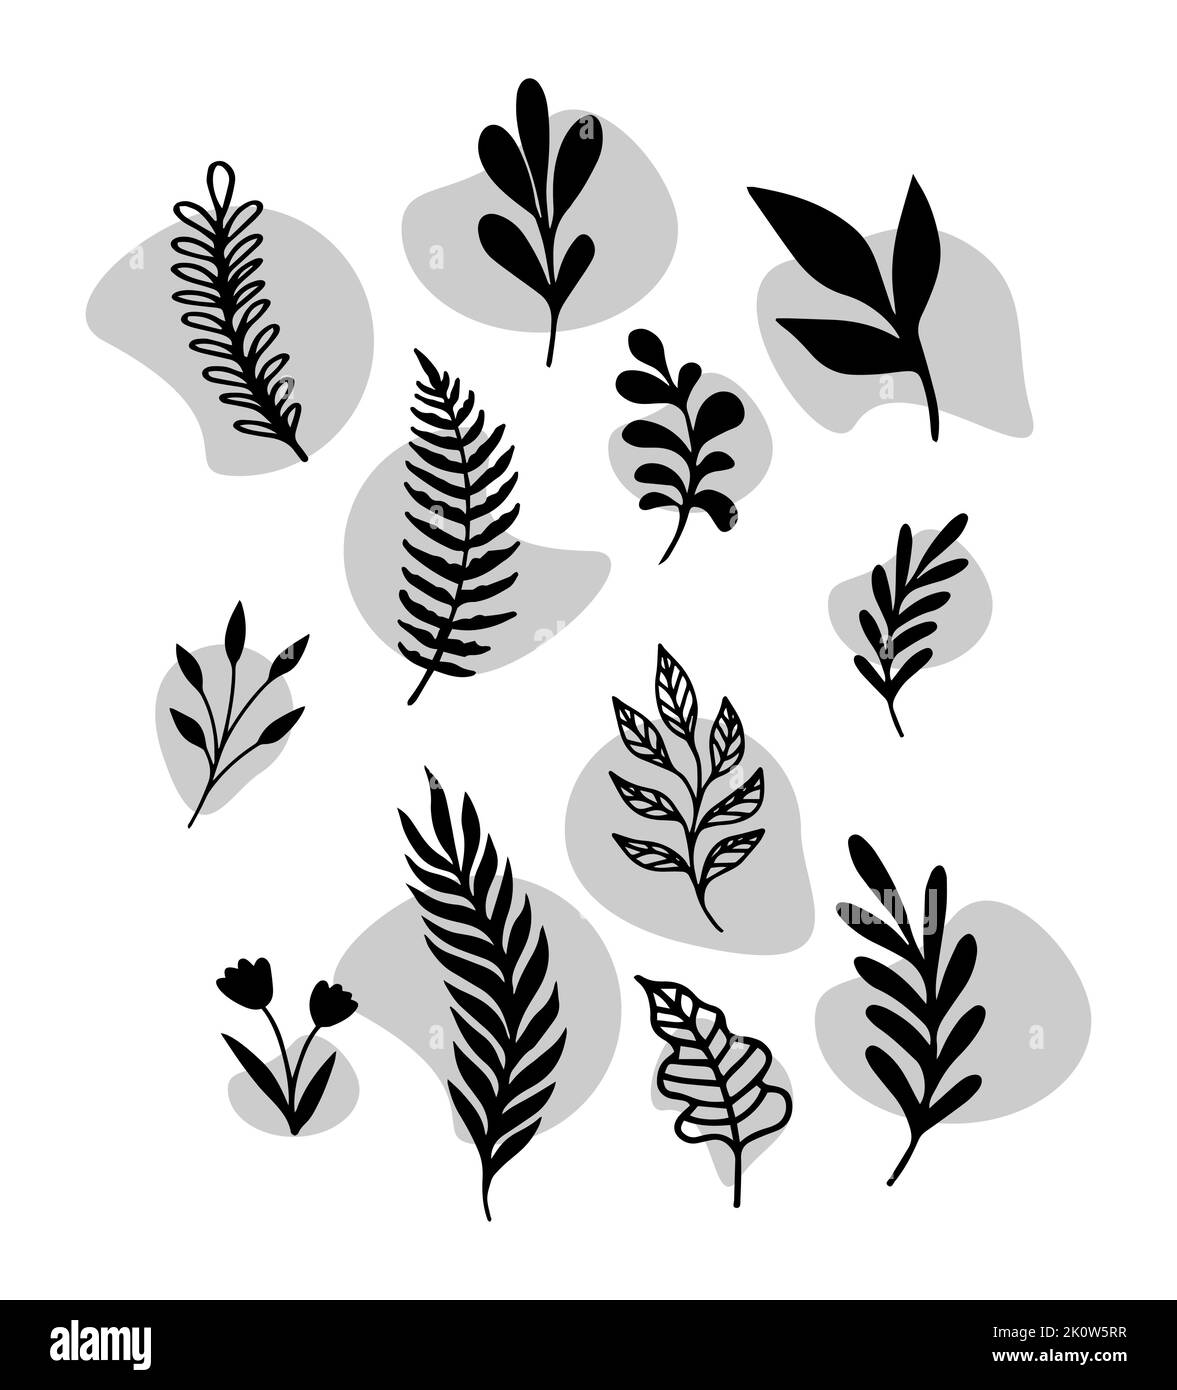 Milieu du siècle moderne contemporain Art botanique mur d'affiche Art moderne Abstract feuilles de feuillages formes organiques. Vector Design pour social Media Print Illustration de Vecteur